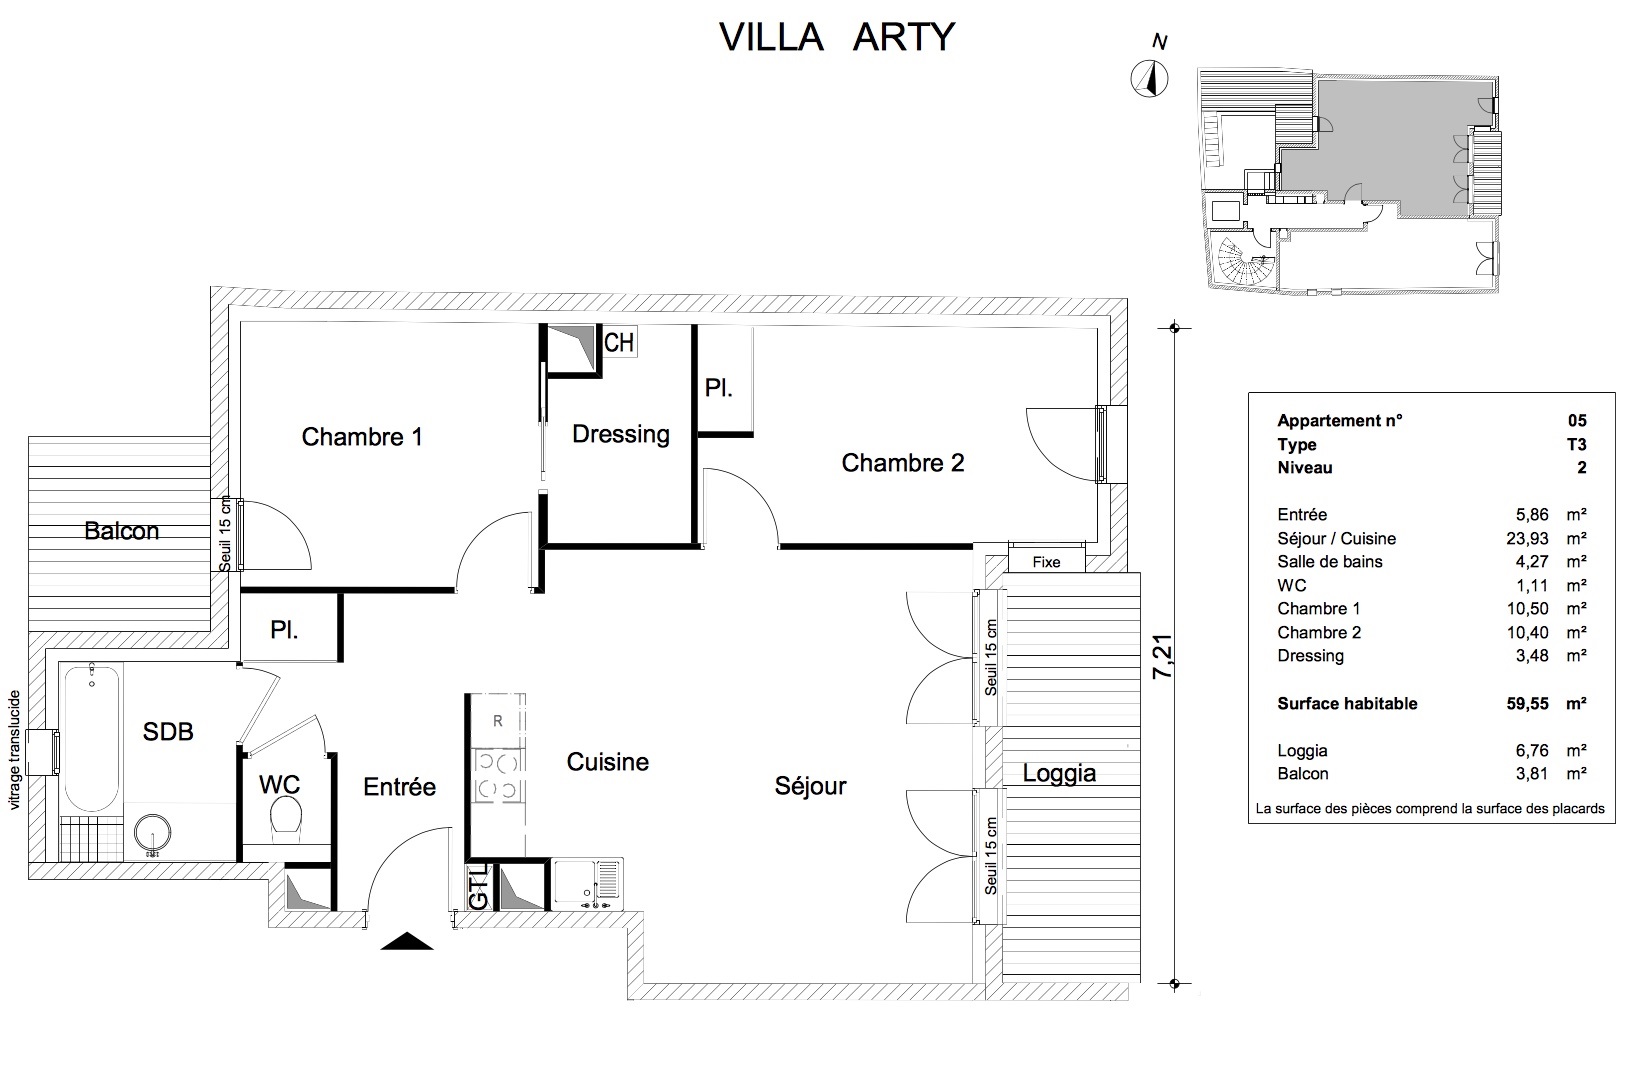 T3 - 59,55 m² - 2ème étage - Loggia 6,76 m² - Balcon 3,81 m² - Documentation - Nous contacter